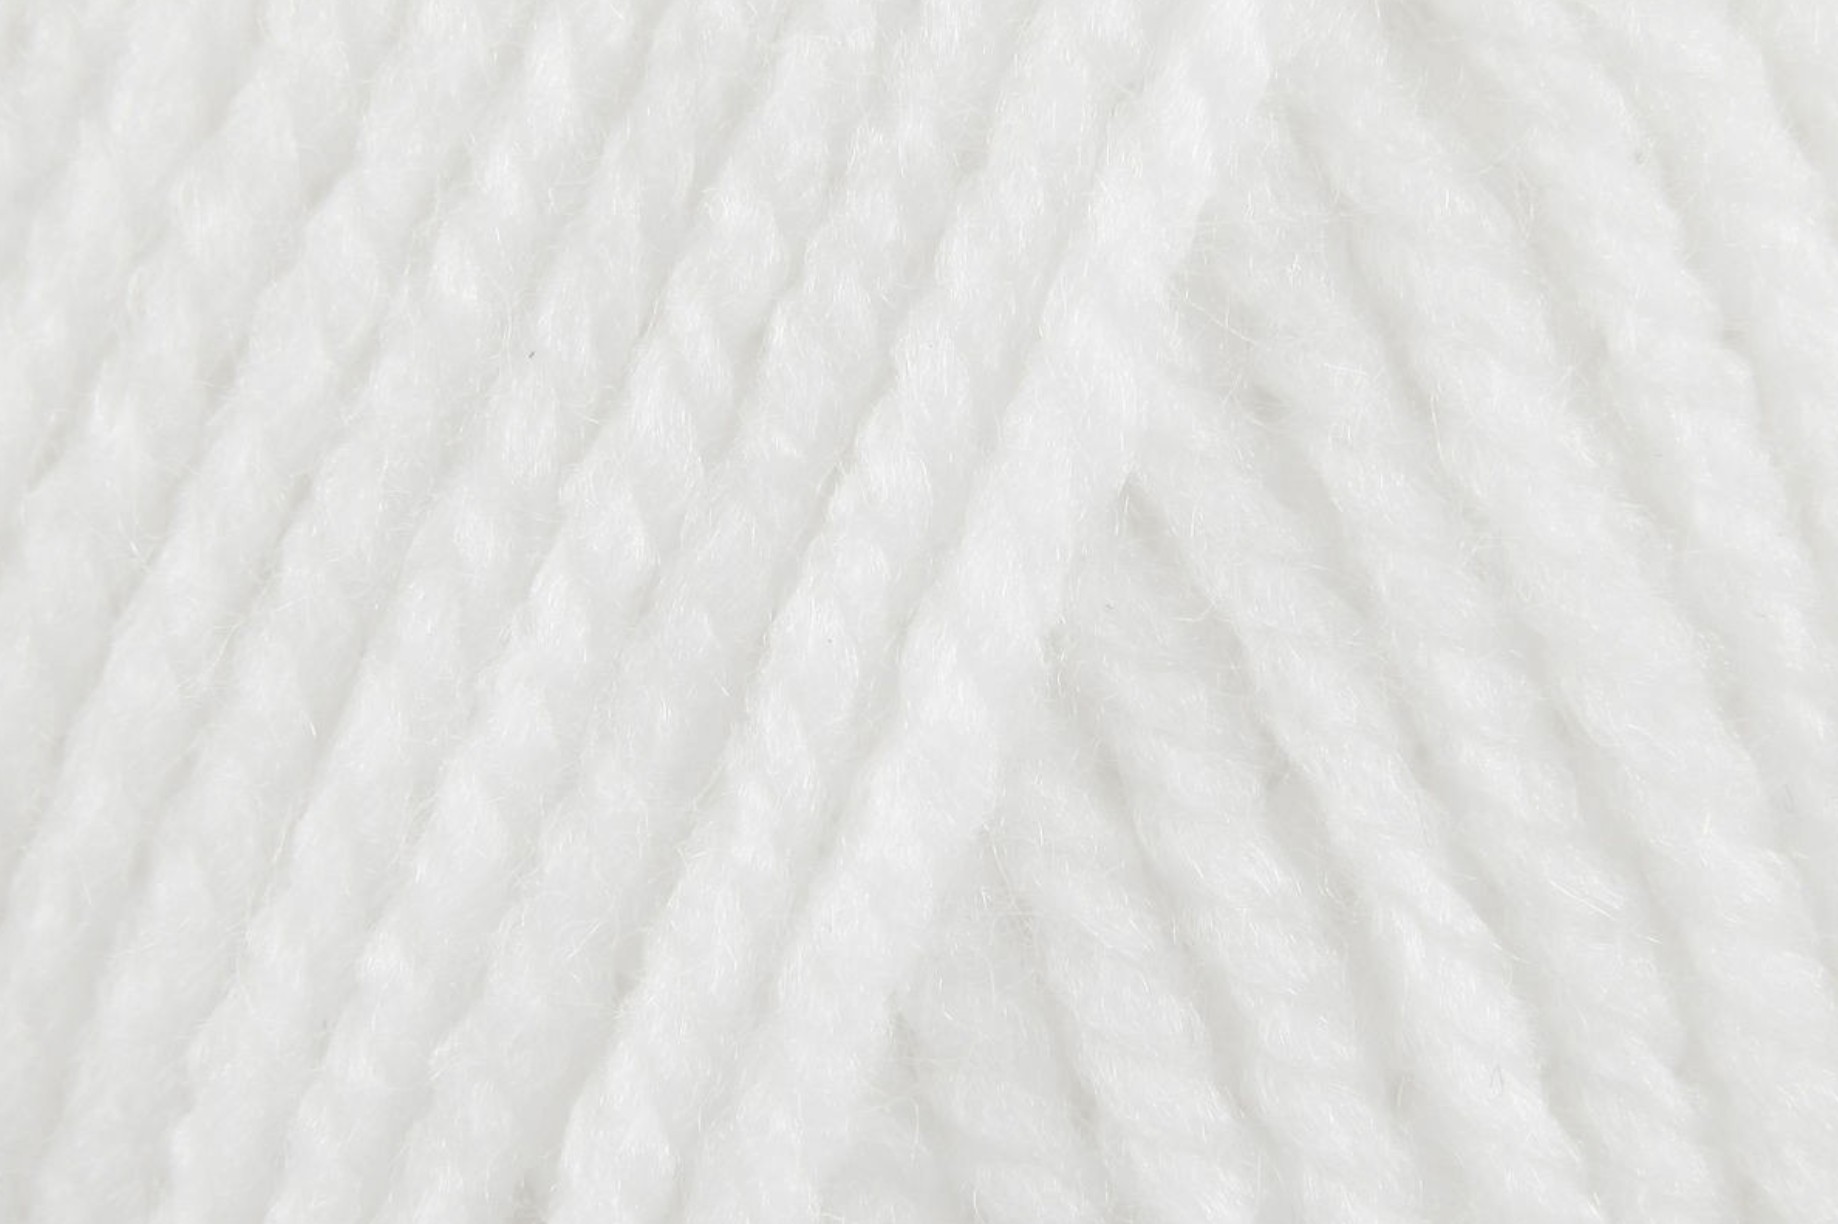 Stylecraft Special Aran in white (1001)